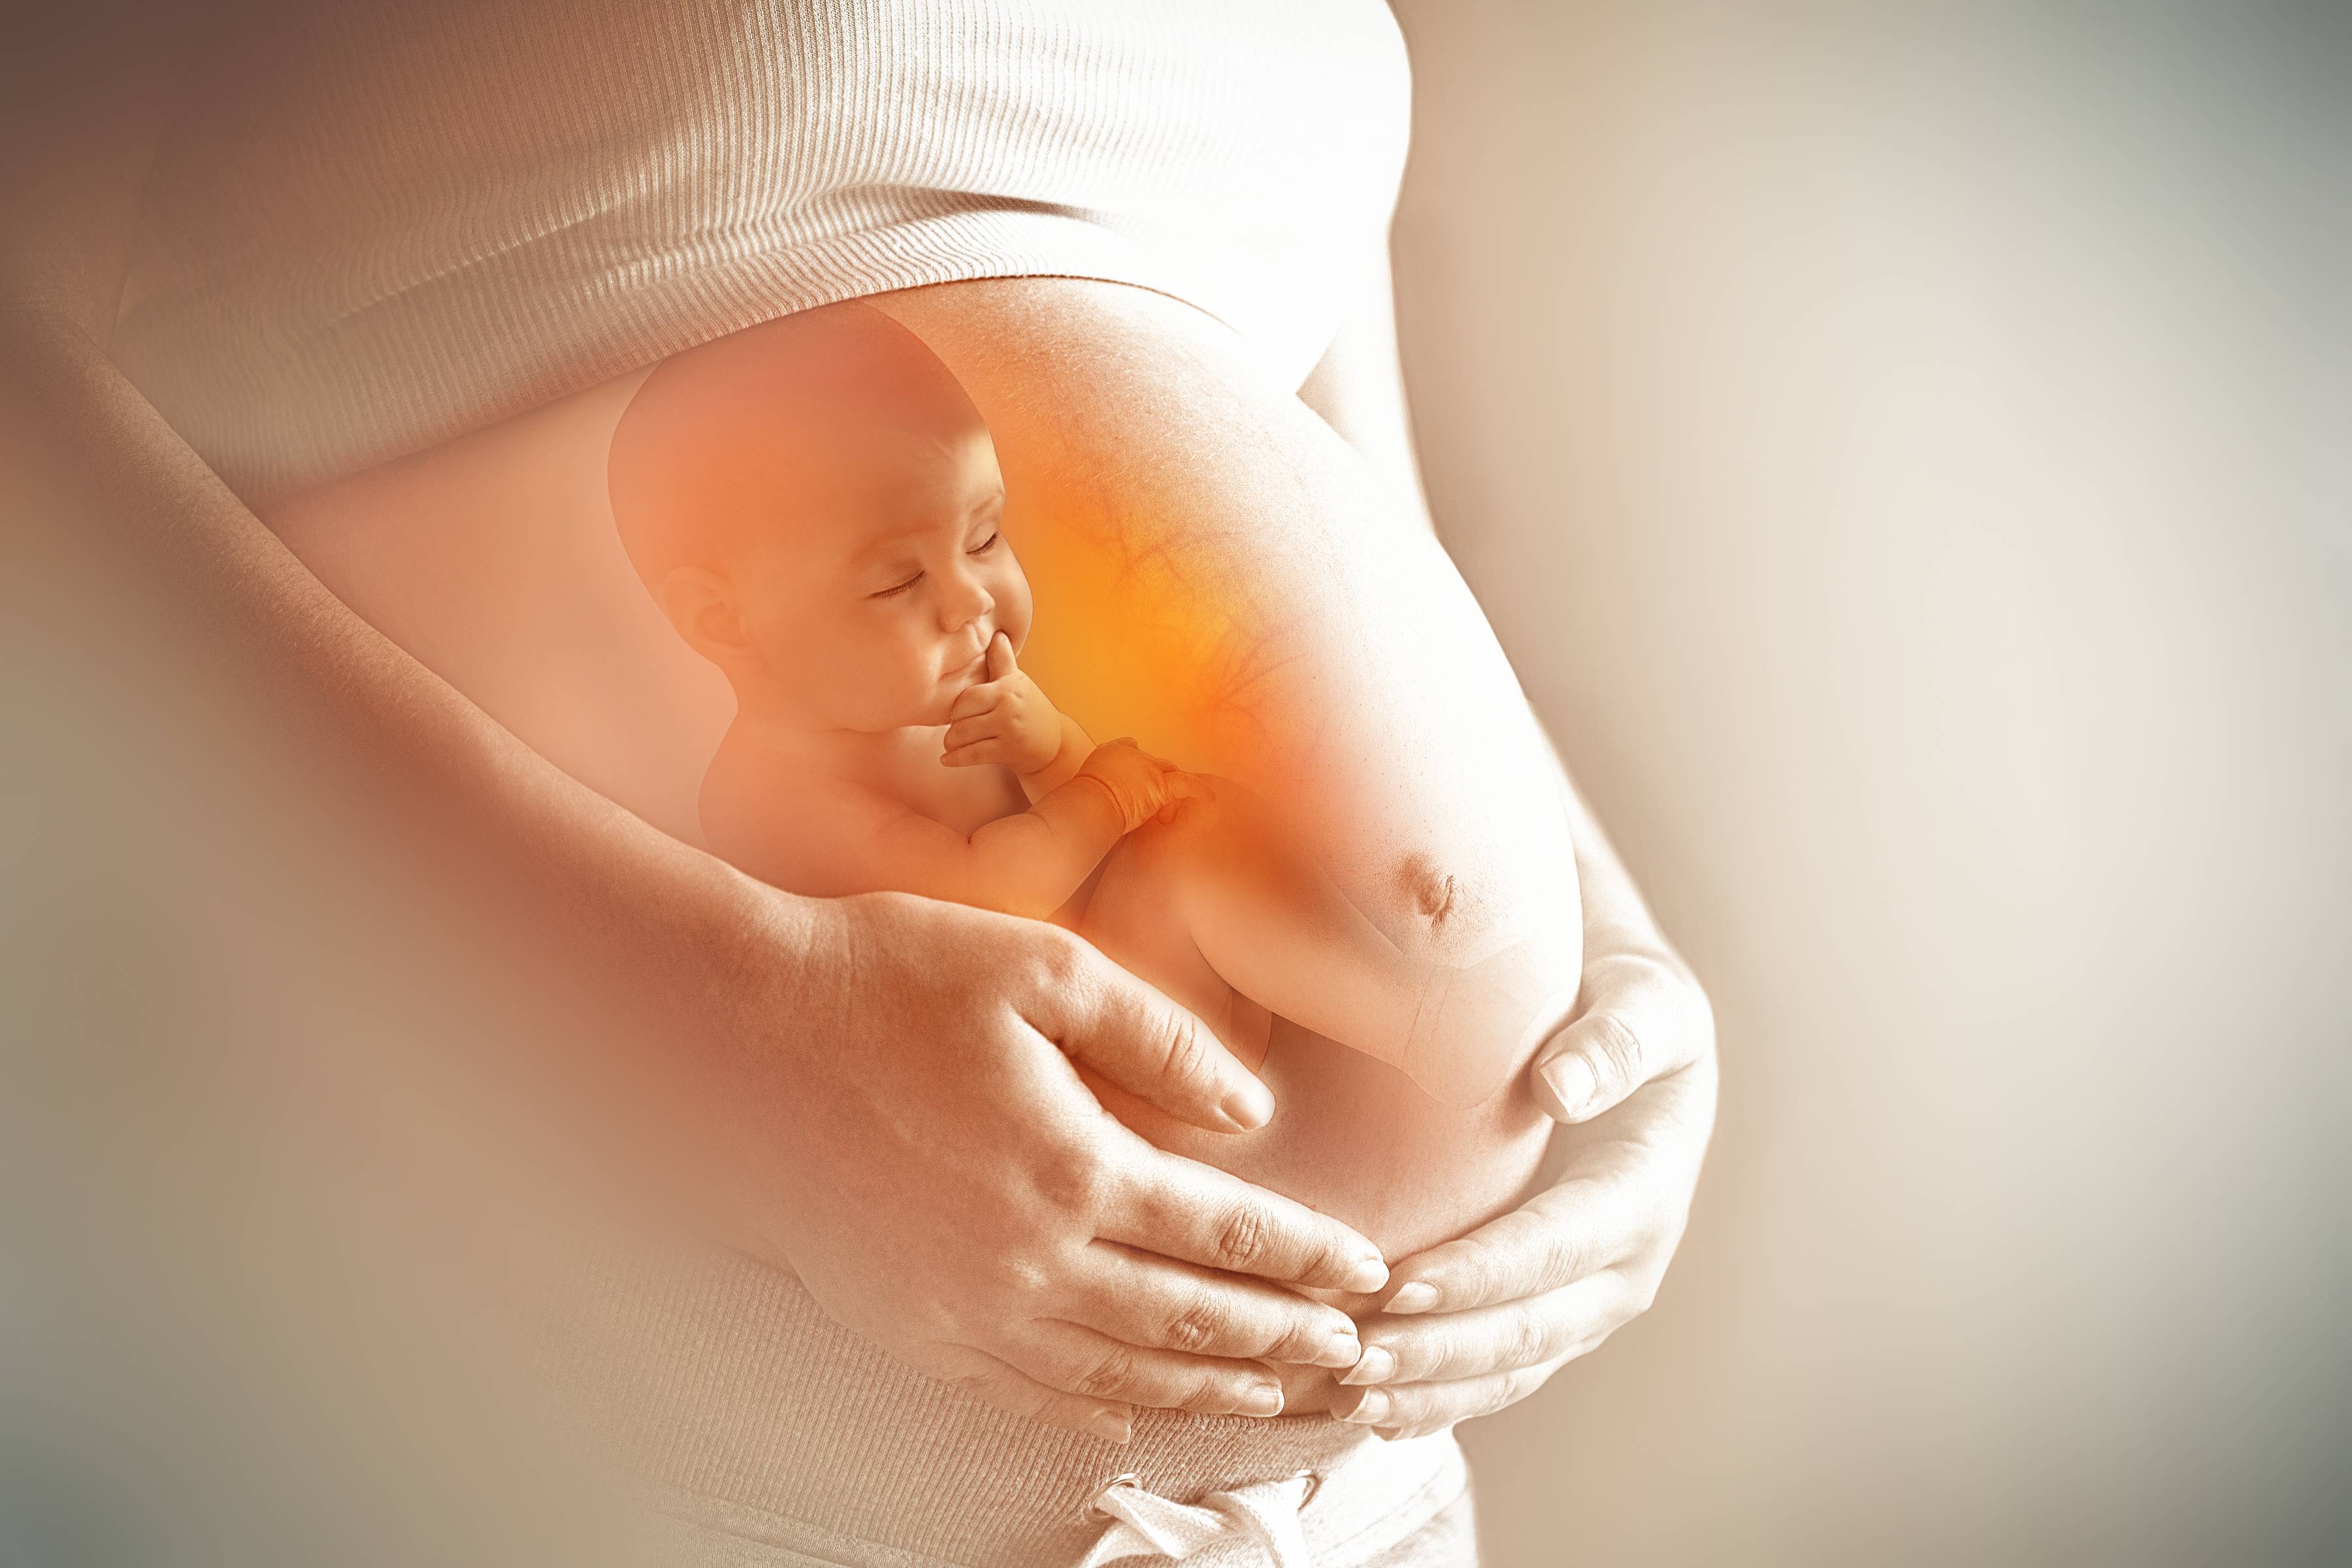 15 неделя беременности: признаки и ощущения женщины, симптомы, развитие плода